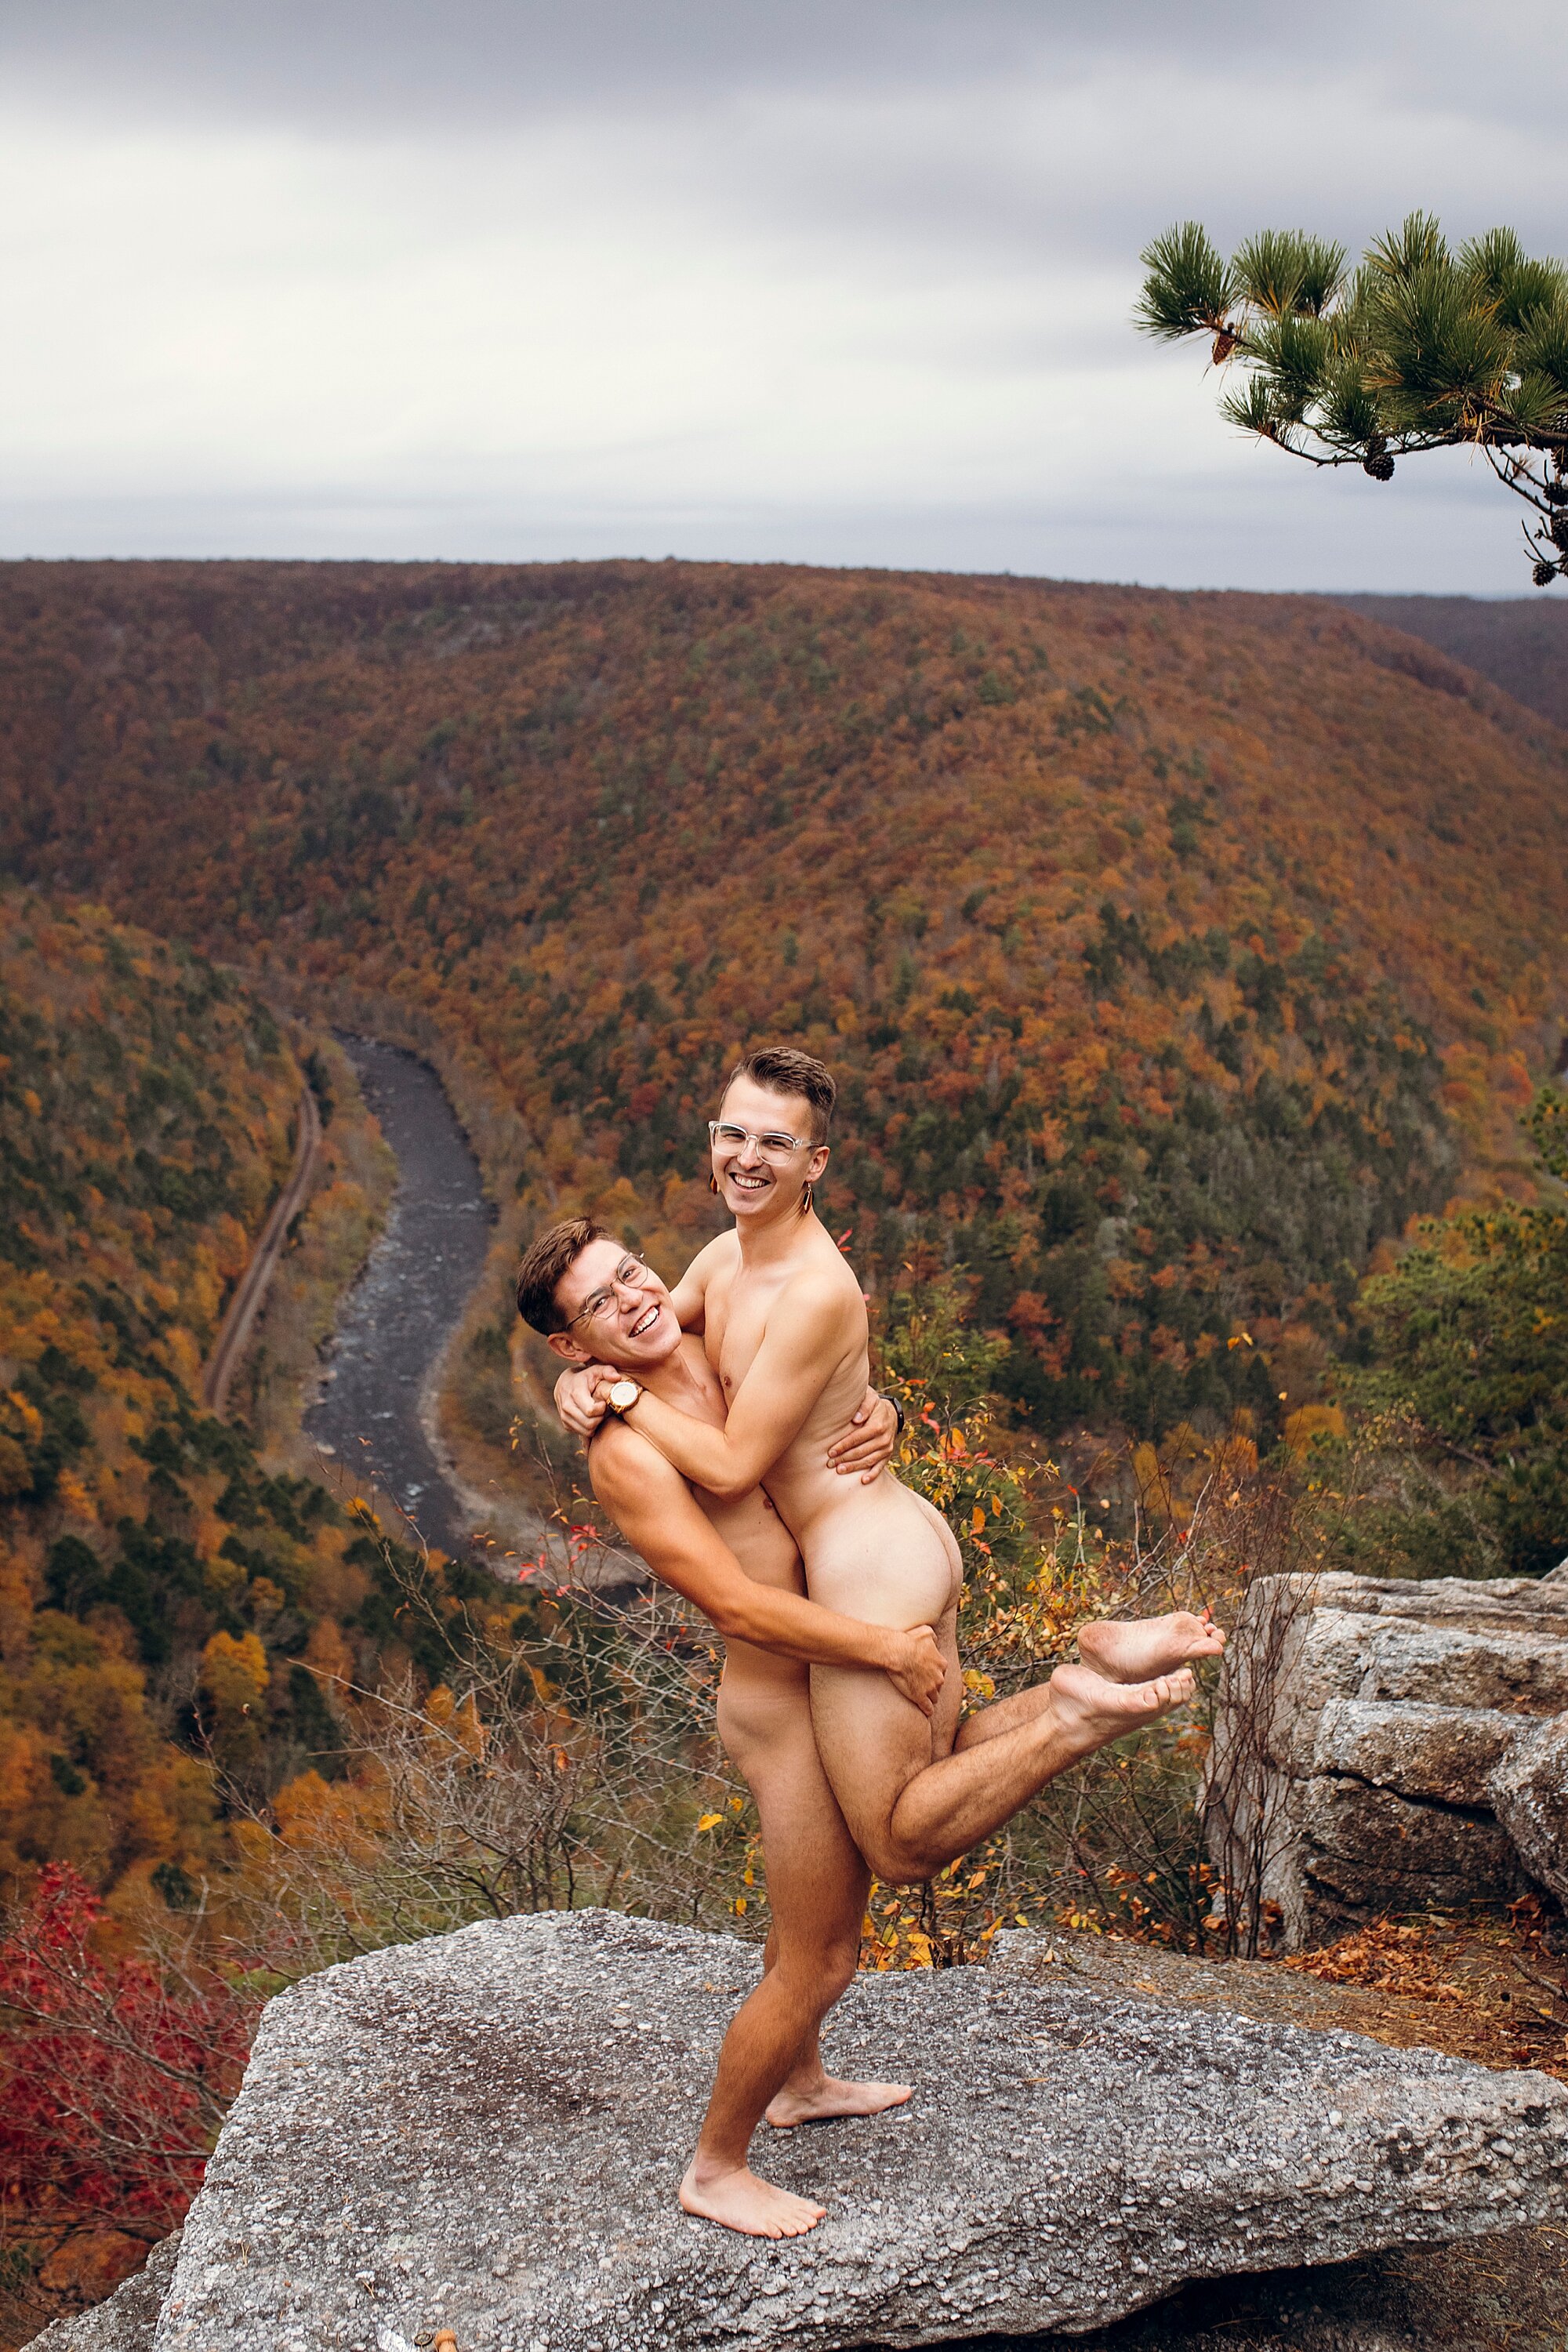 01_AAron_Nathan_Love_by_Joe_mac_best_Philadelphia_Wedding_Photography_Nude_Engagement_Gay_Queer_LGBT_nudist_045.JPG